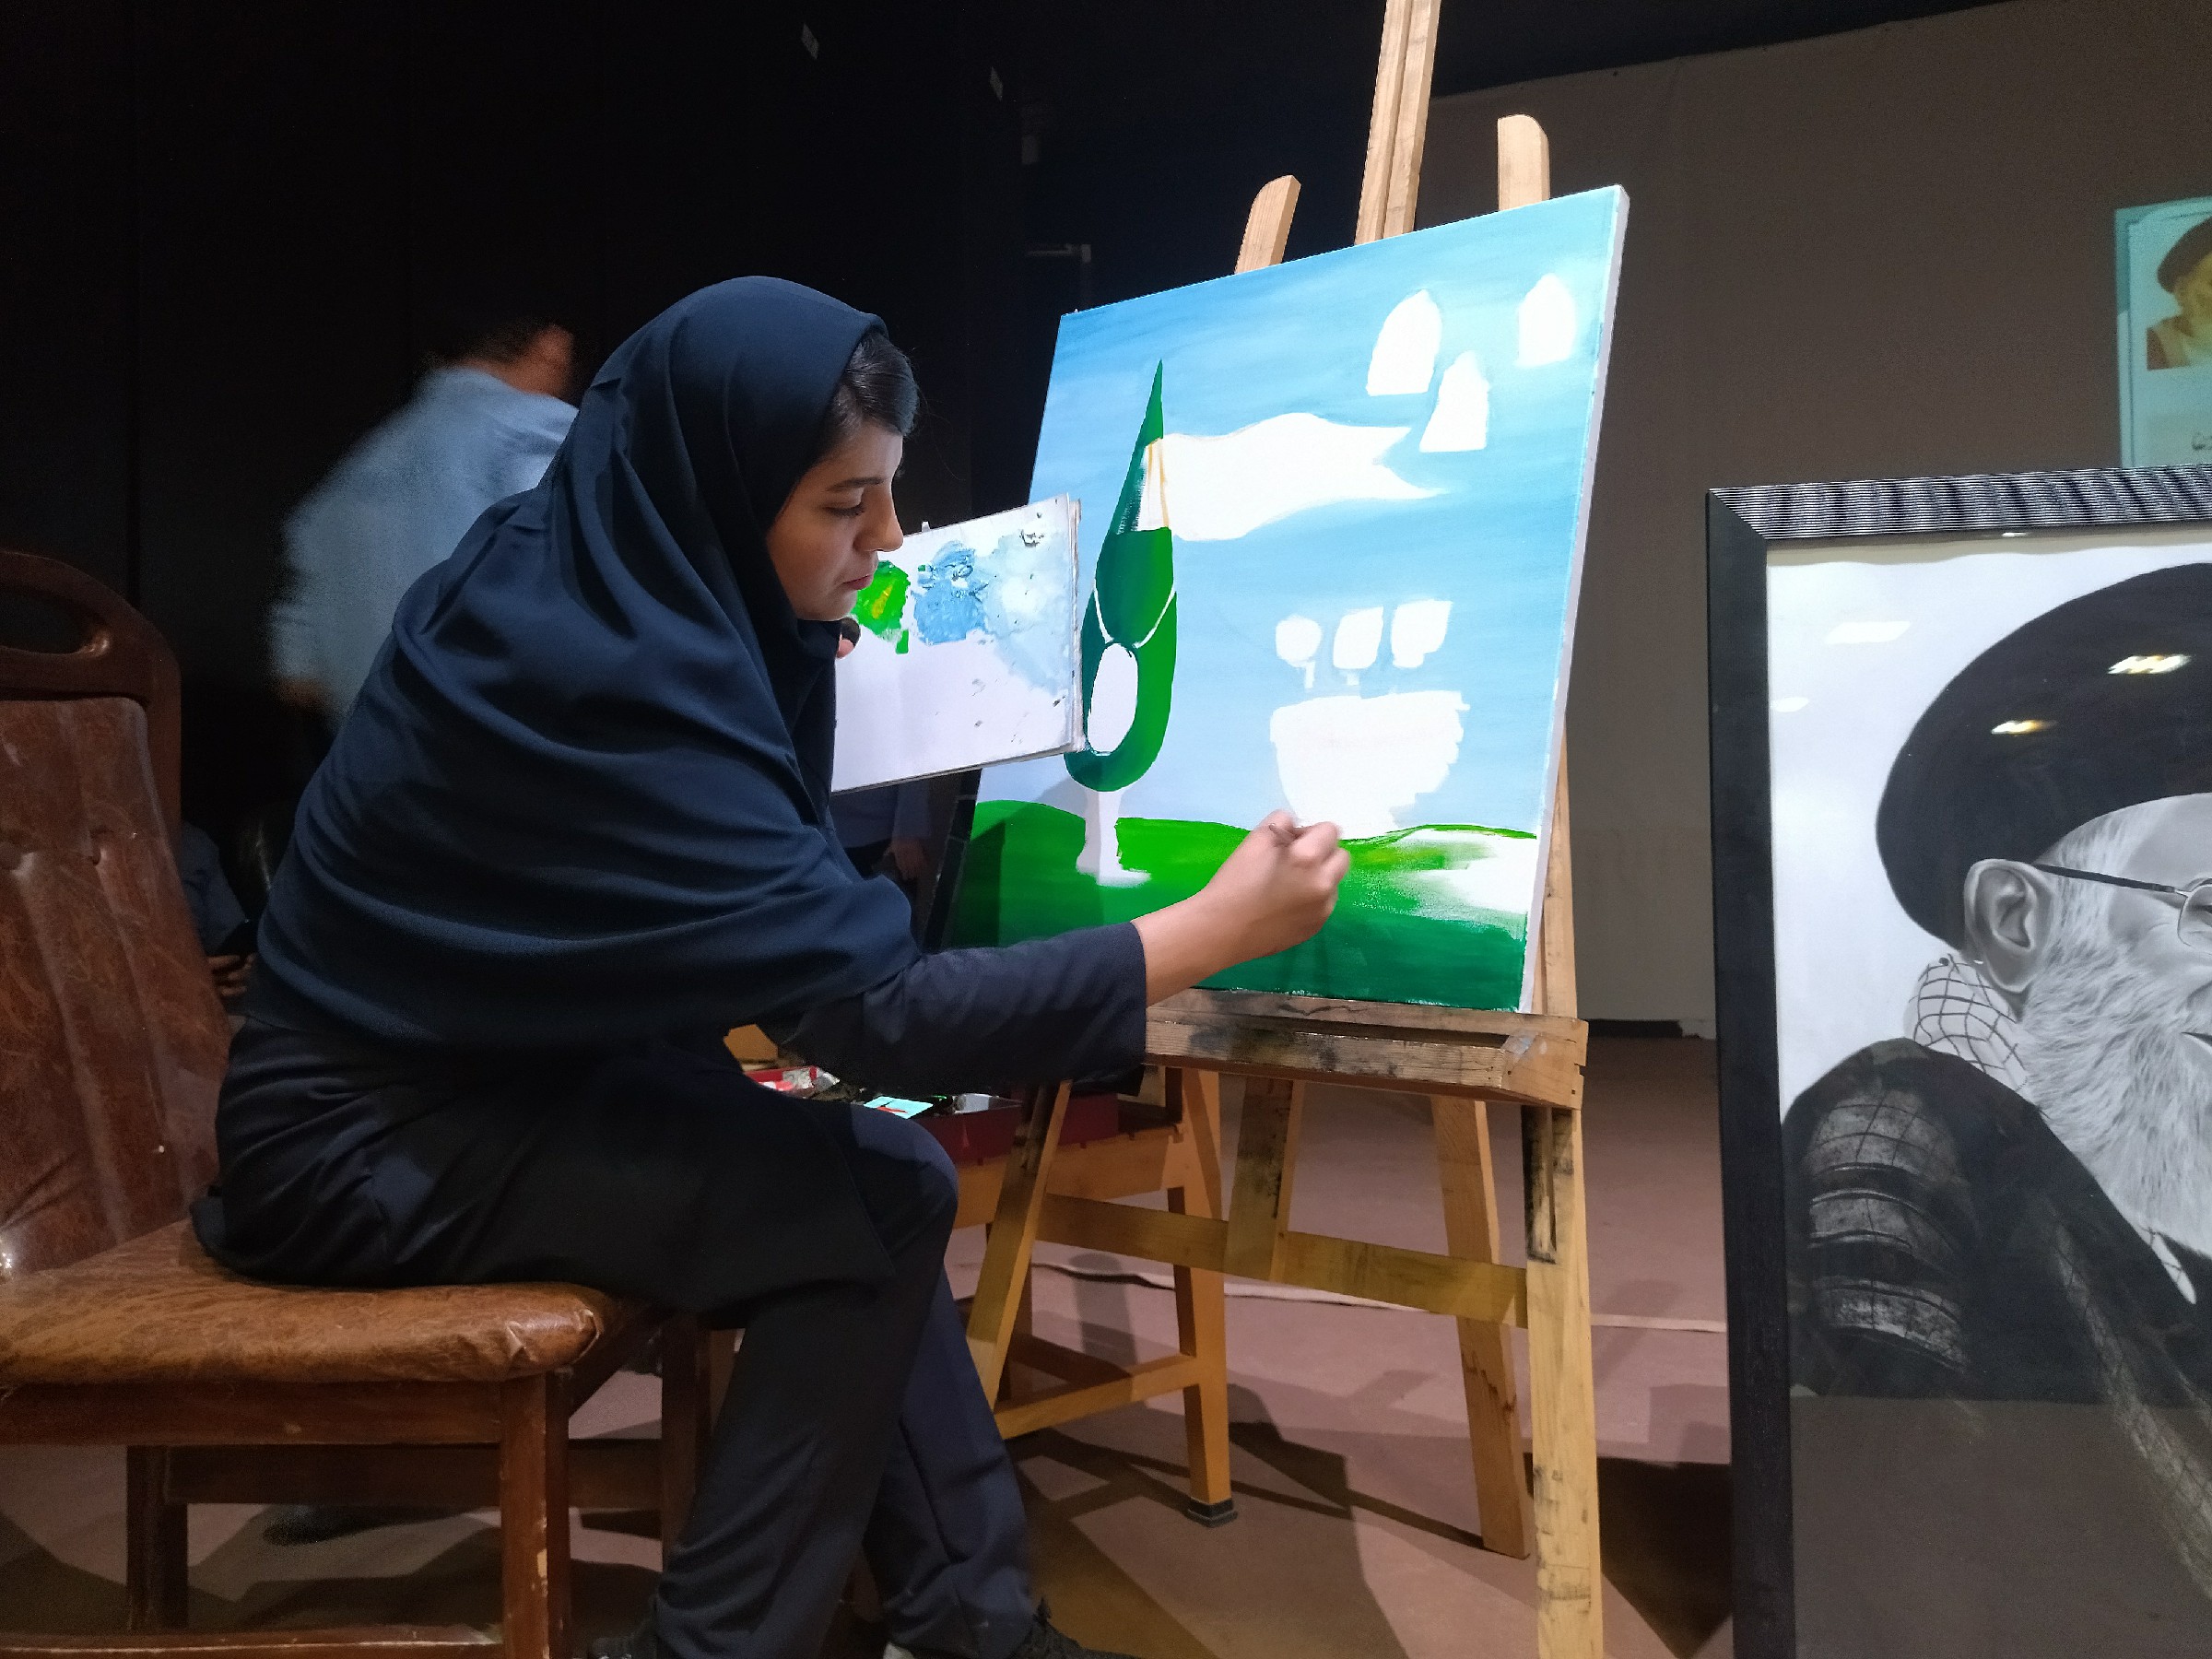 برگزاری همایش فرهنگی و هنری به مناسبت هفته دفاع مقدس در شهرستان بهمئی + عکس